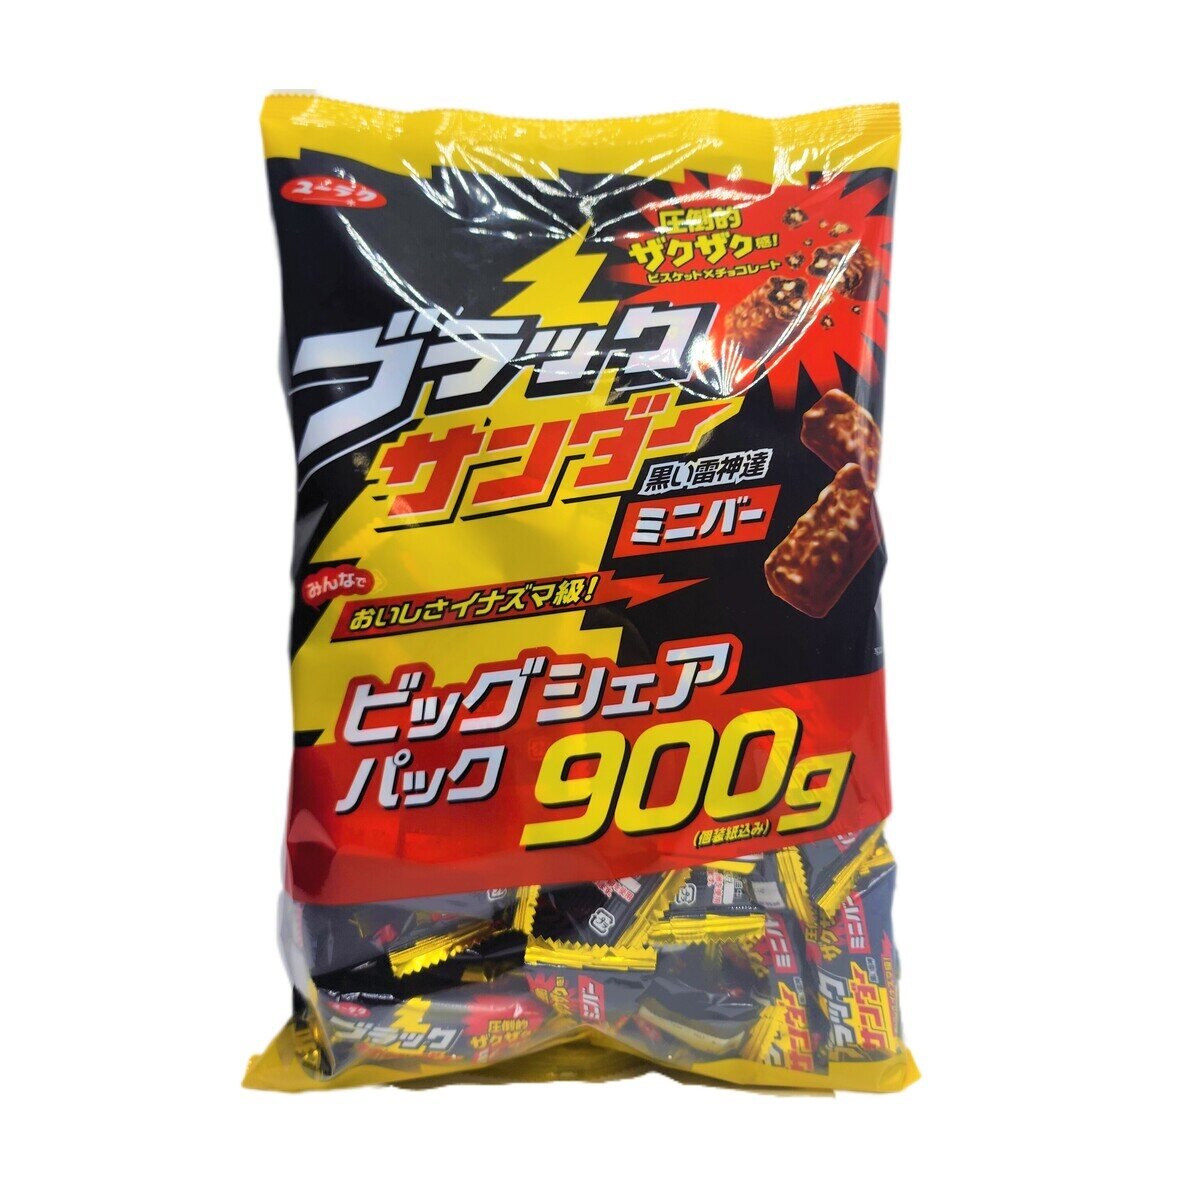 ブラックサンダー 900g×２袋 超大容量ビッグシュアパック 有楽製菓